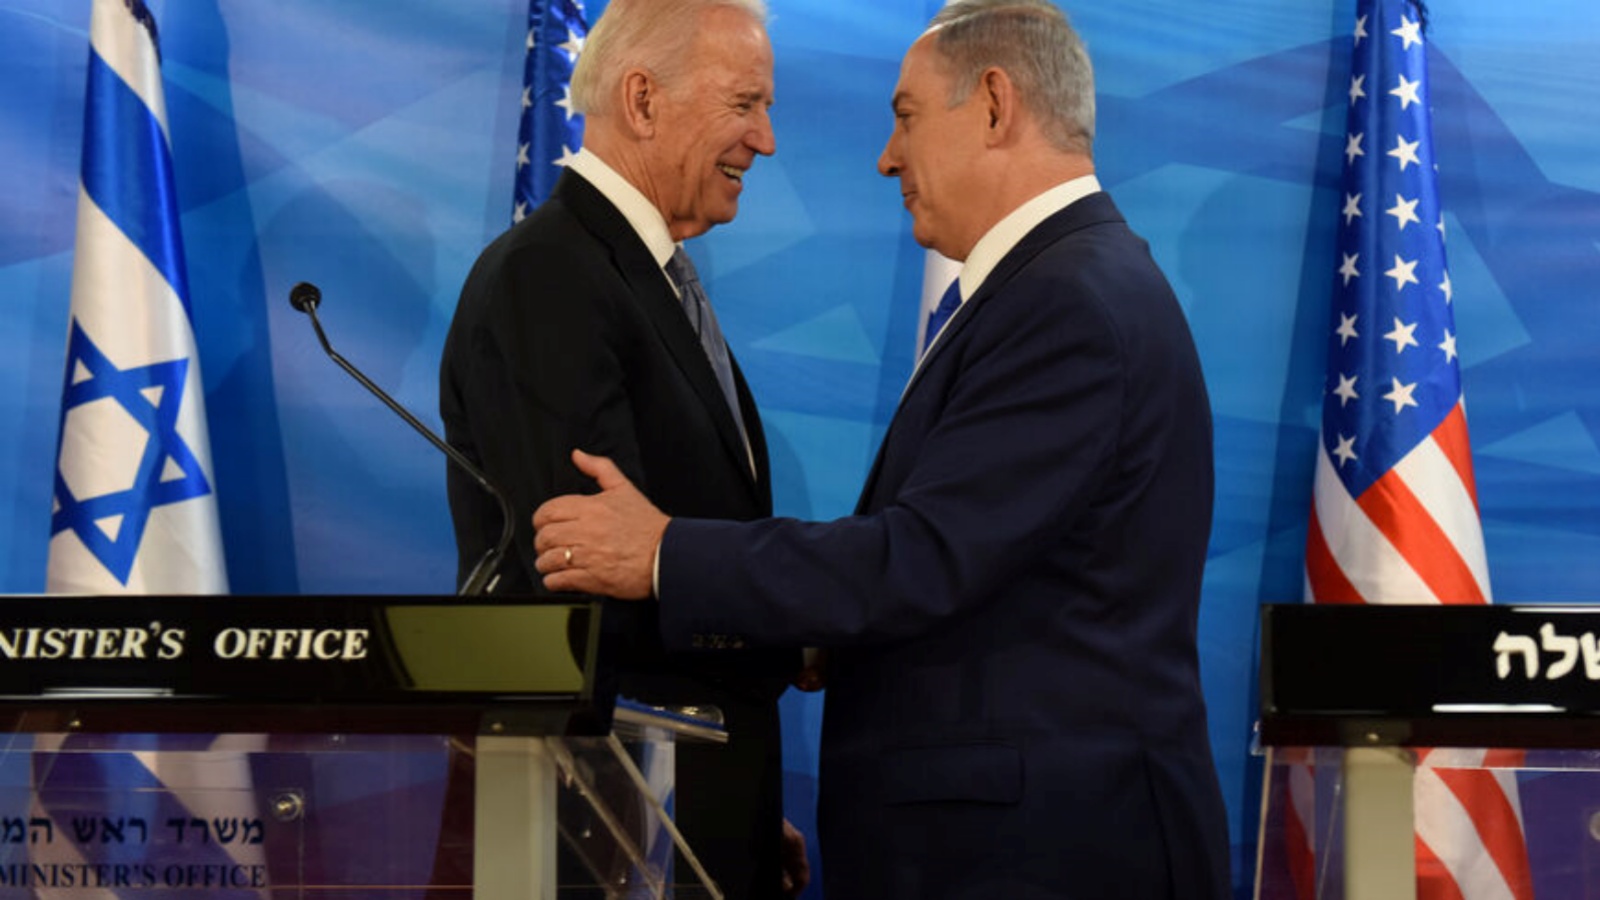 الرئيس الأميركي جو بايدن ورئيس الوزراء الإسرائيلي بنيامين نتنياهو أثناء الإدلاء بتصريحات مشتركة في مكتب رئيس الوزراء في القدس (أرشيفية)